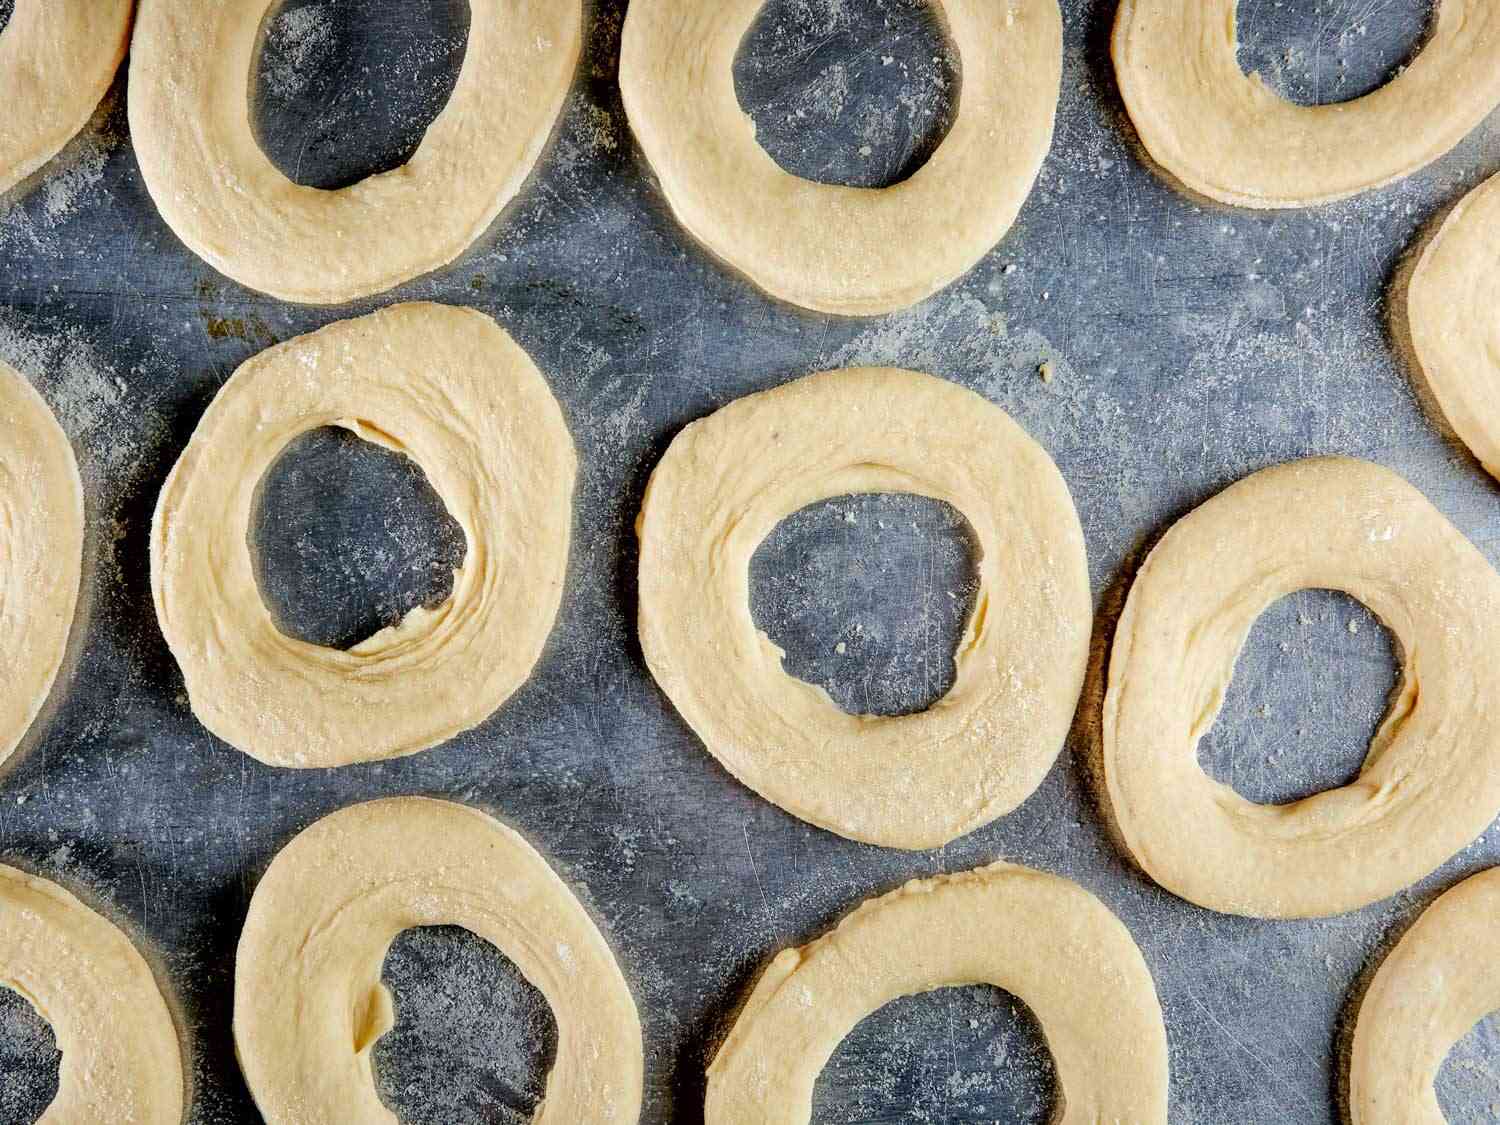 tray of unproofed doughnuts